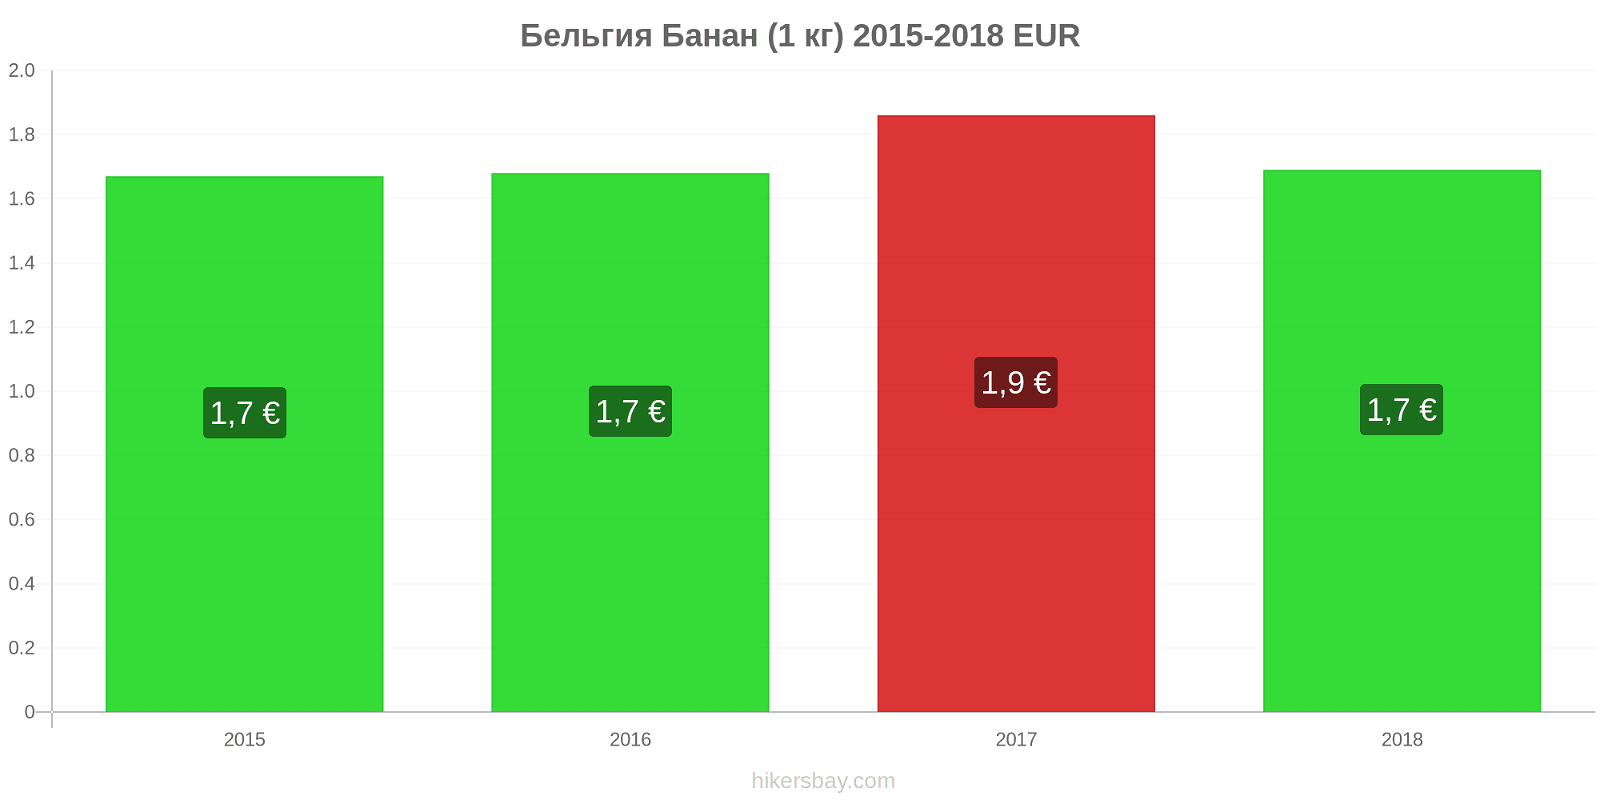 Бельгия изменения цен Бананы (1 кг) hikersbay.com